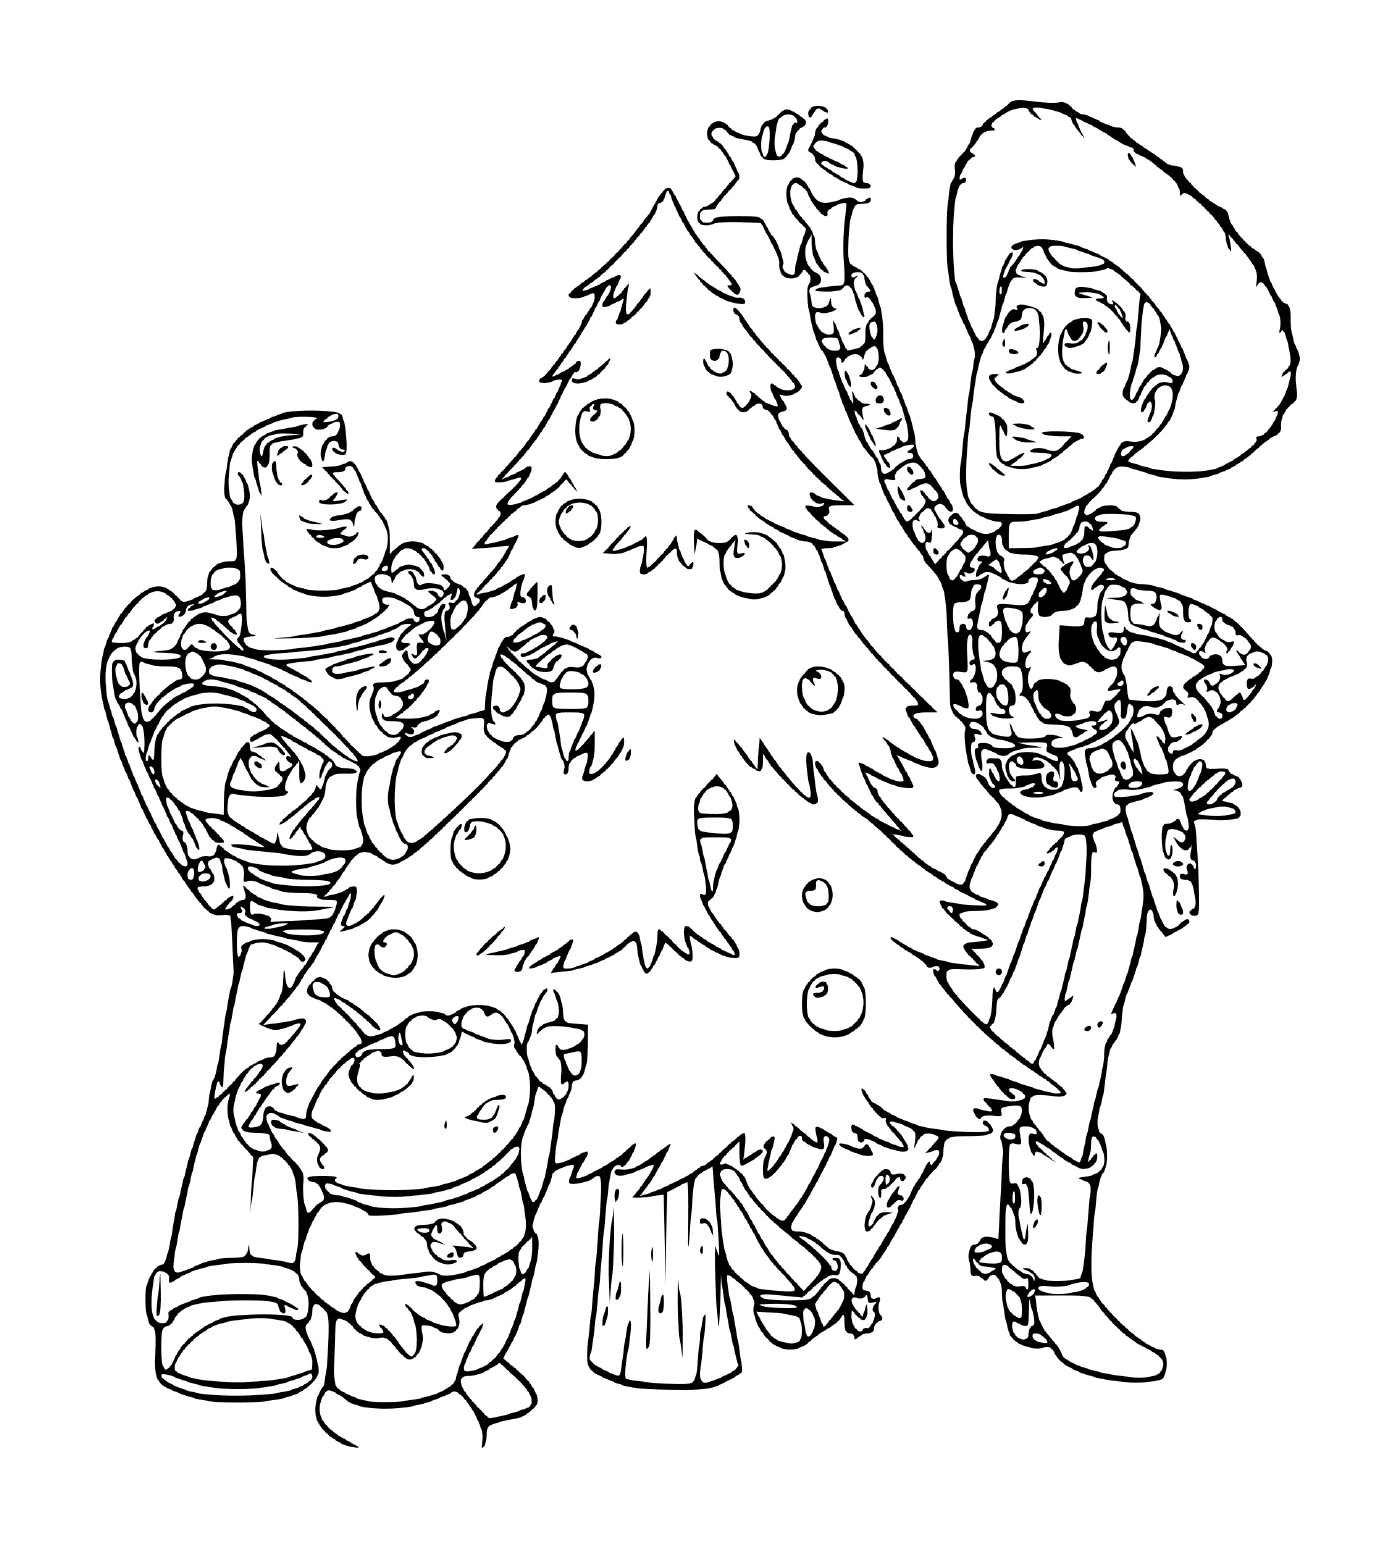   Toy Story à Noël, magie de l'enfance 